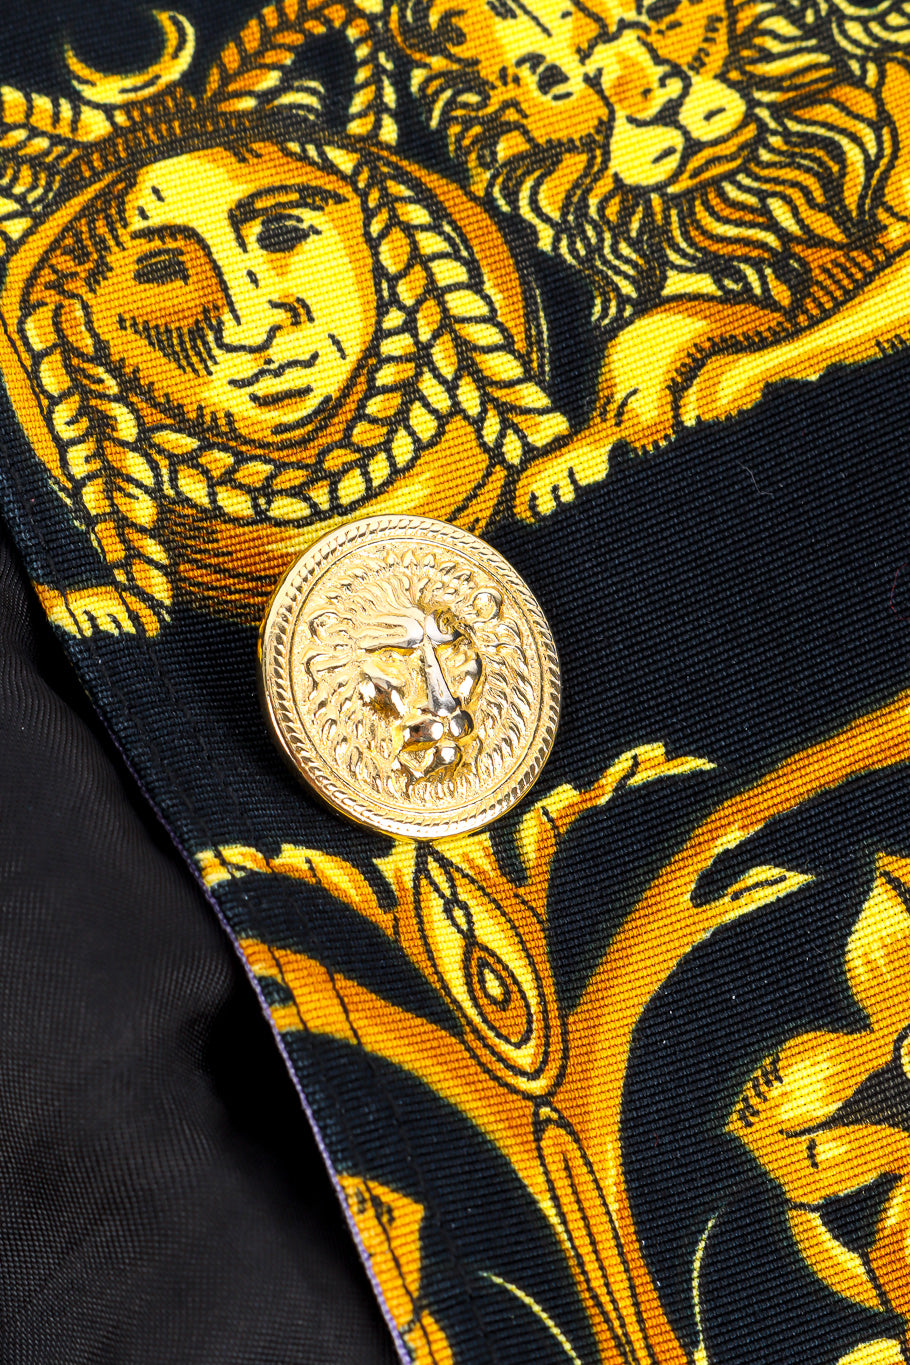 Lion brocade print blazer button close-up @recessla